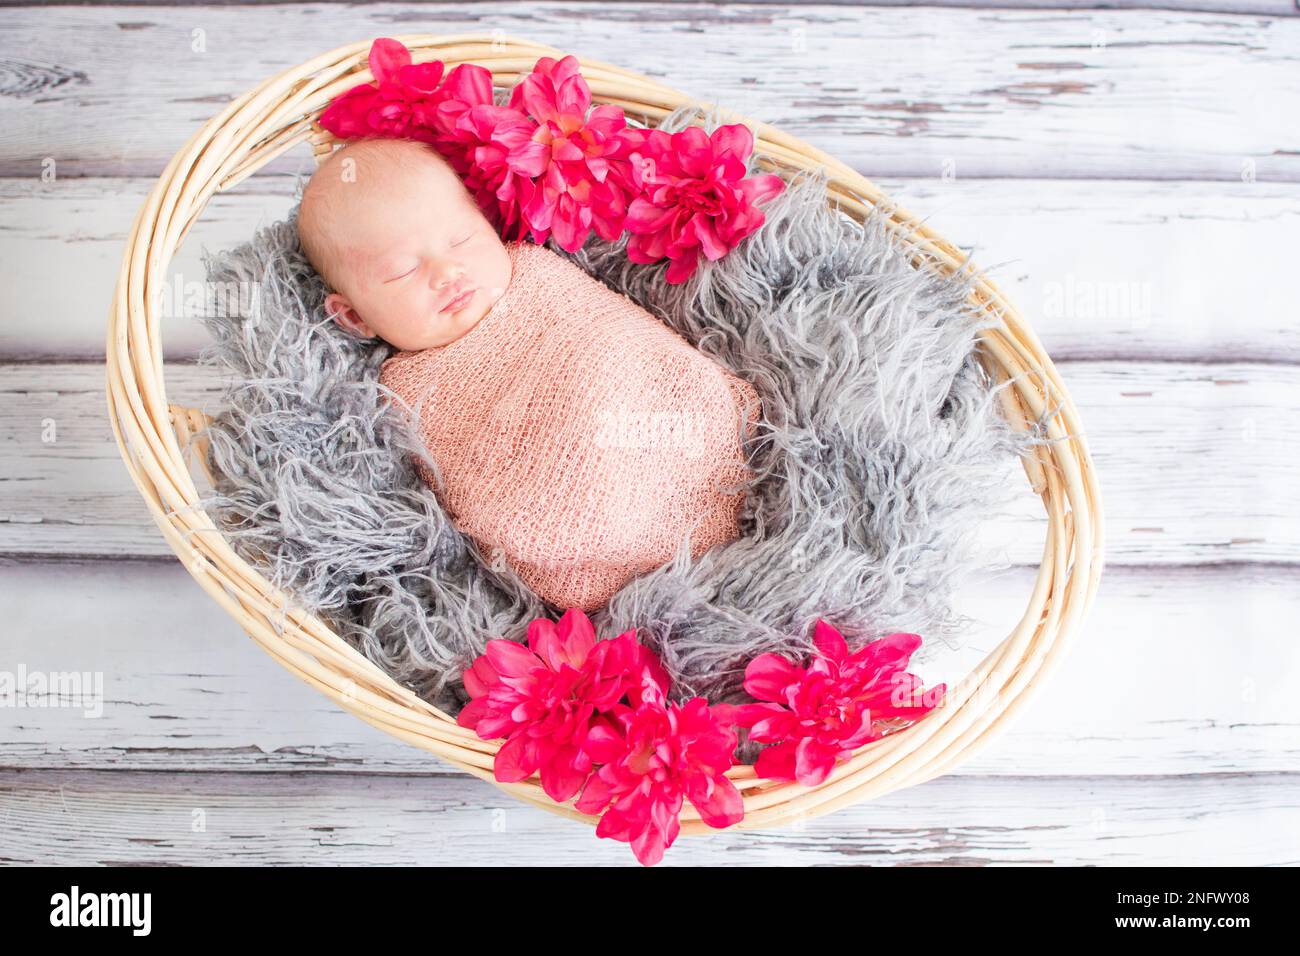 Piccolo neonato caucasico travollato in una cavalcata rosa che dorme in un cesto su una pelliccia Foto Stock